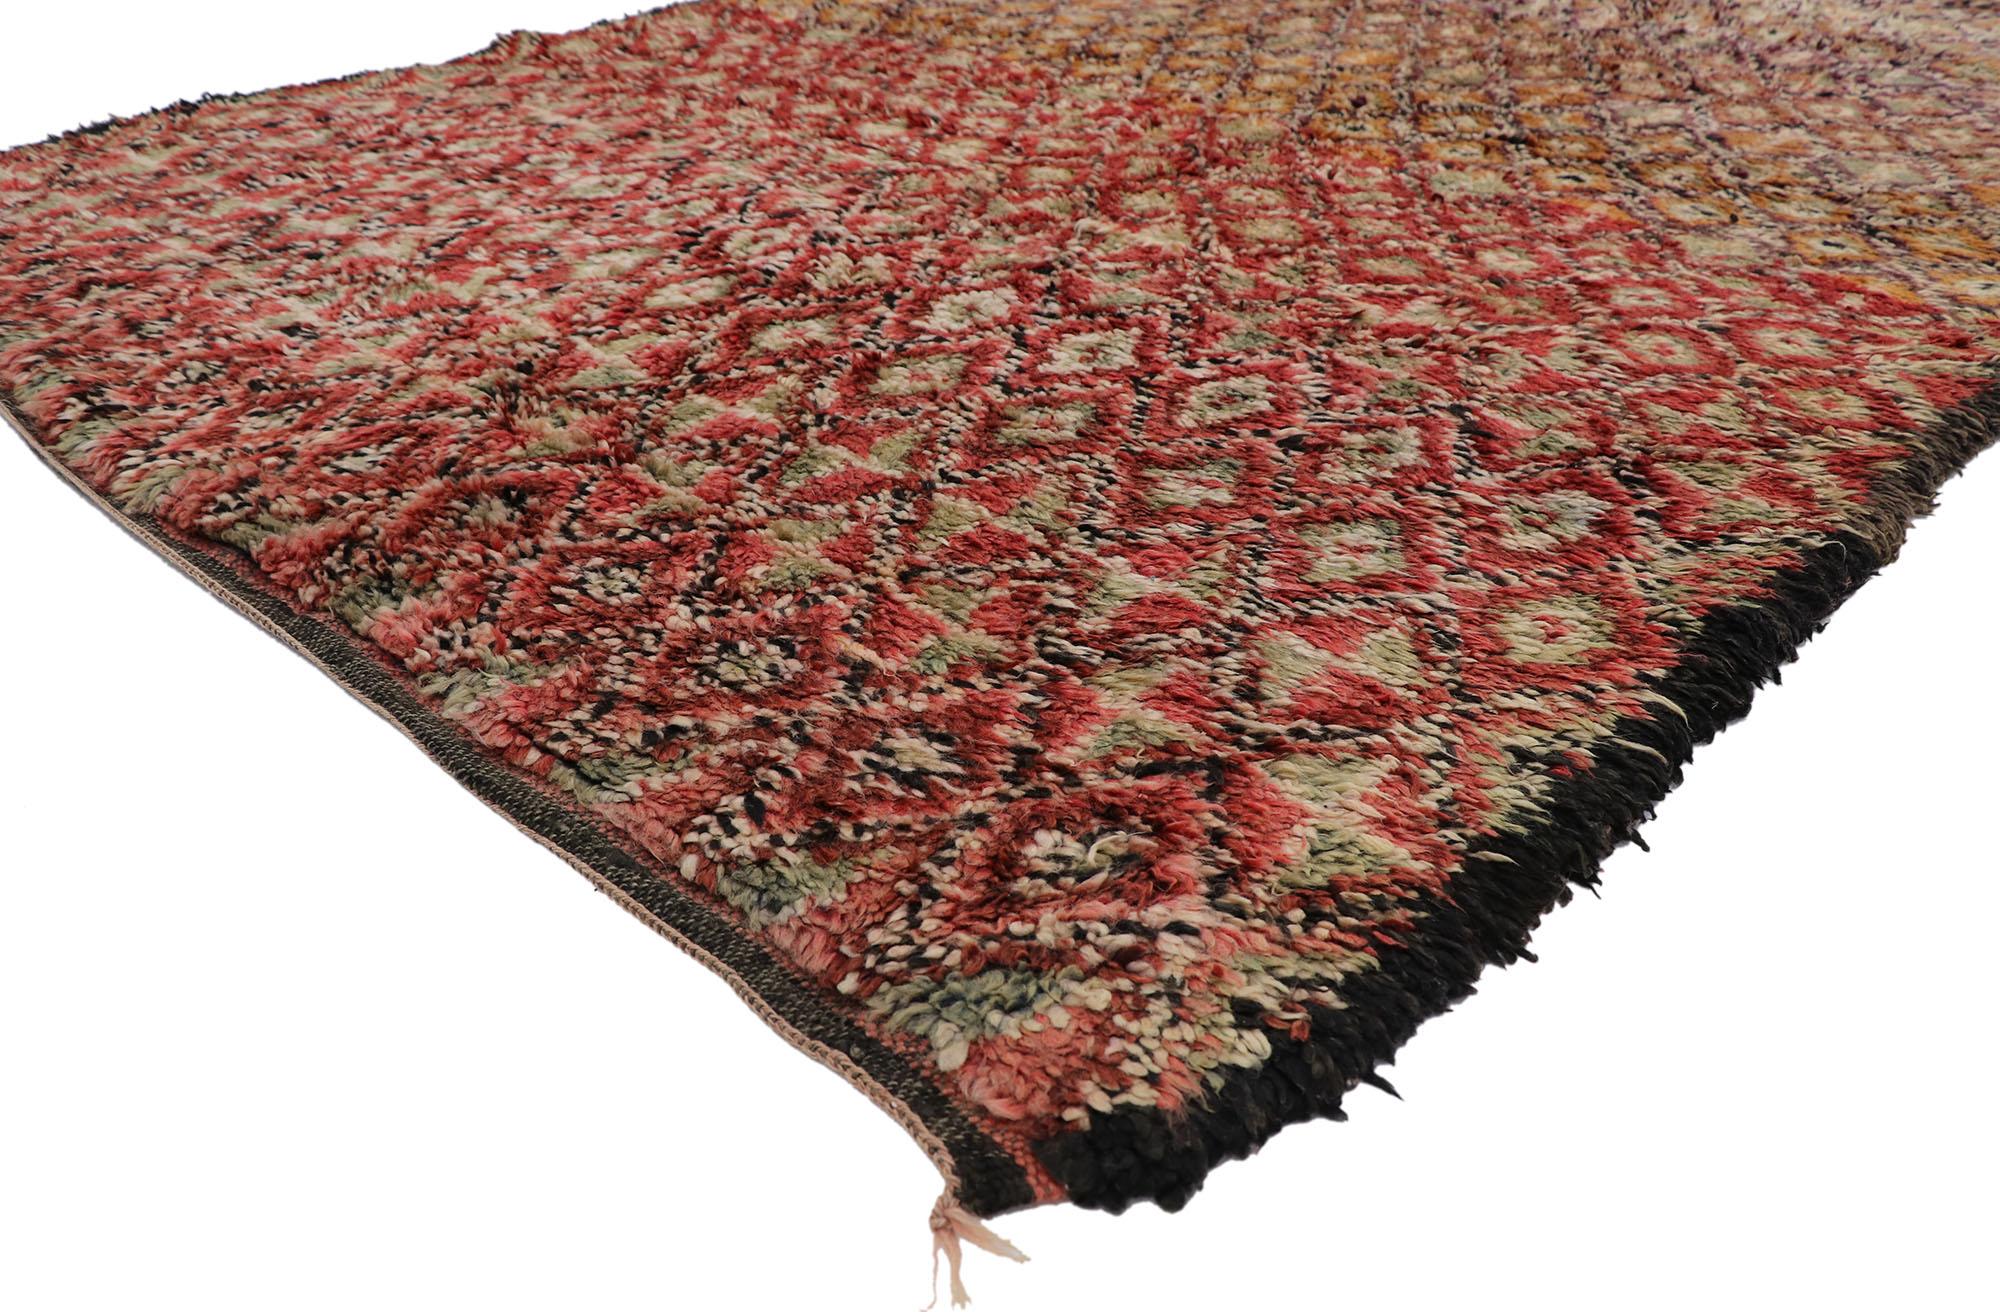 21225 Vintage Berber Beni M'Guild Marokkanischer Teppich 06'03 x 09'03. Dieser handgeknüpfte marokkanische Berberteppich Beni M'Guild aus Wolle ist warm und einladend, eine fesselnde Vision gewebter Schönheit. Das geschliffene Feld zeigt ein